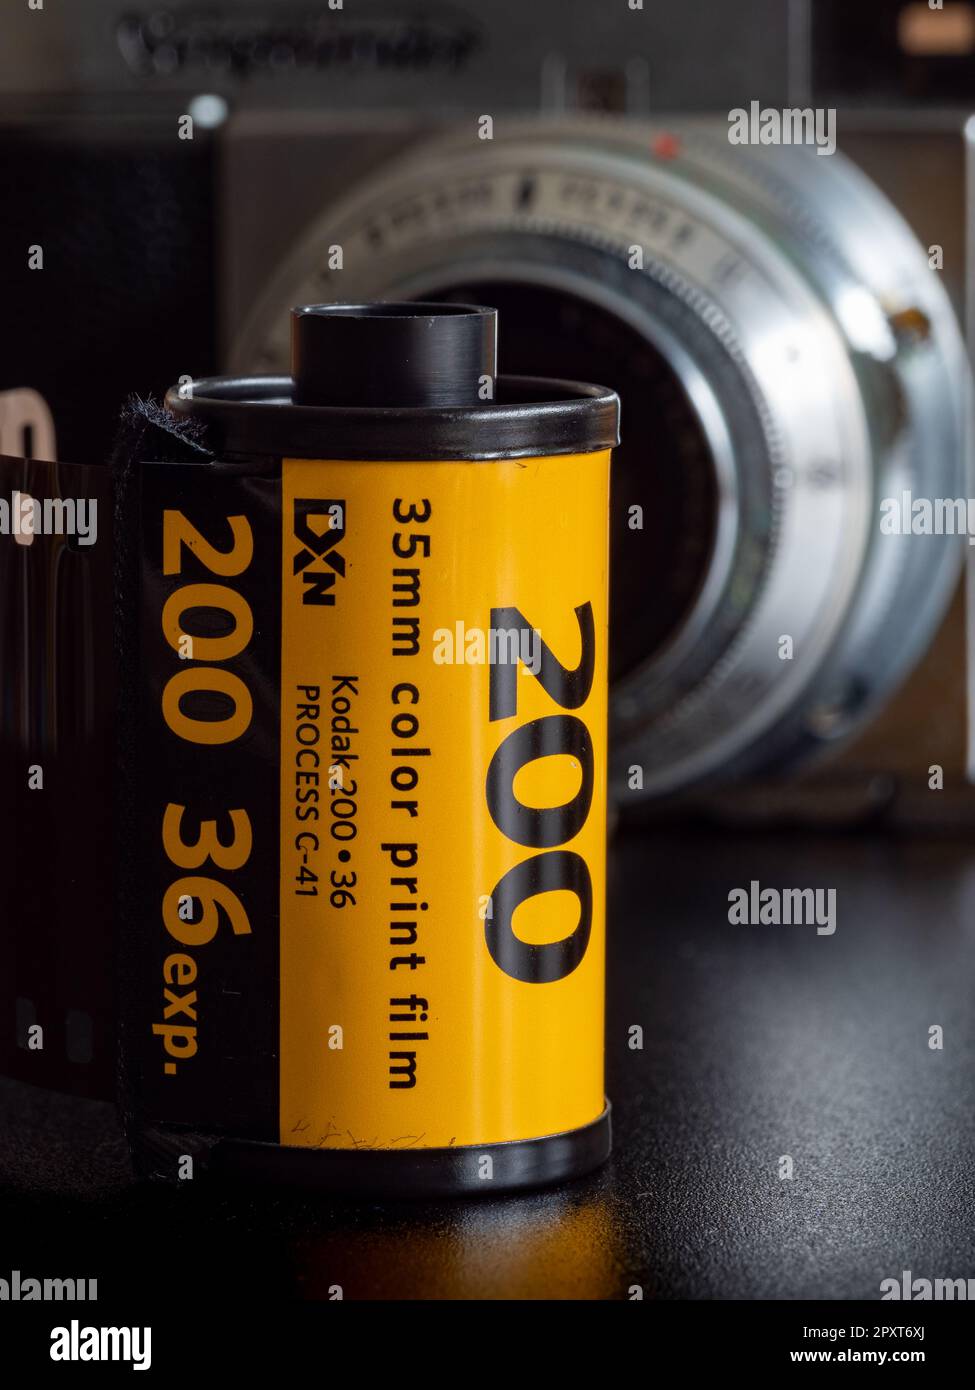 Un film Kodak 35mm doré, le moyen classique non numérique de traiter des photos avec un négatif. Banque D'Images